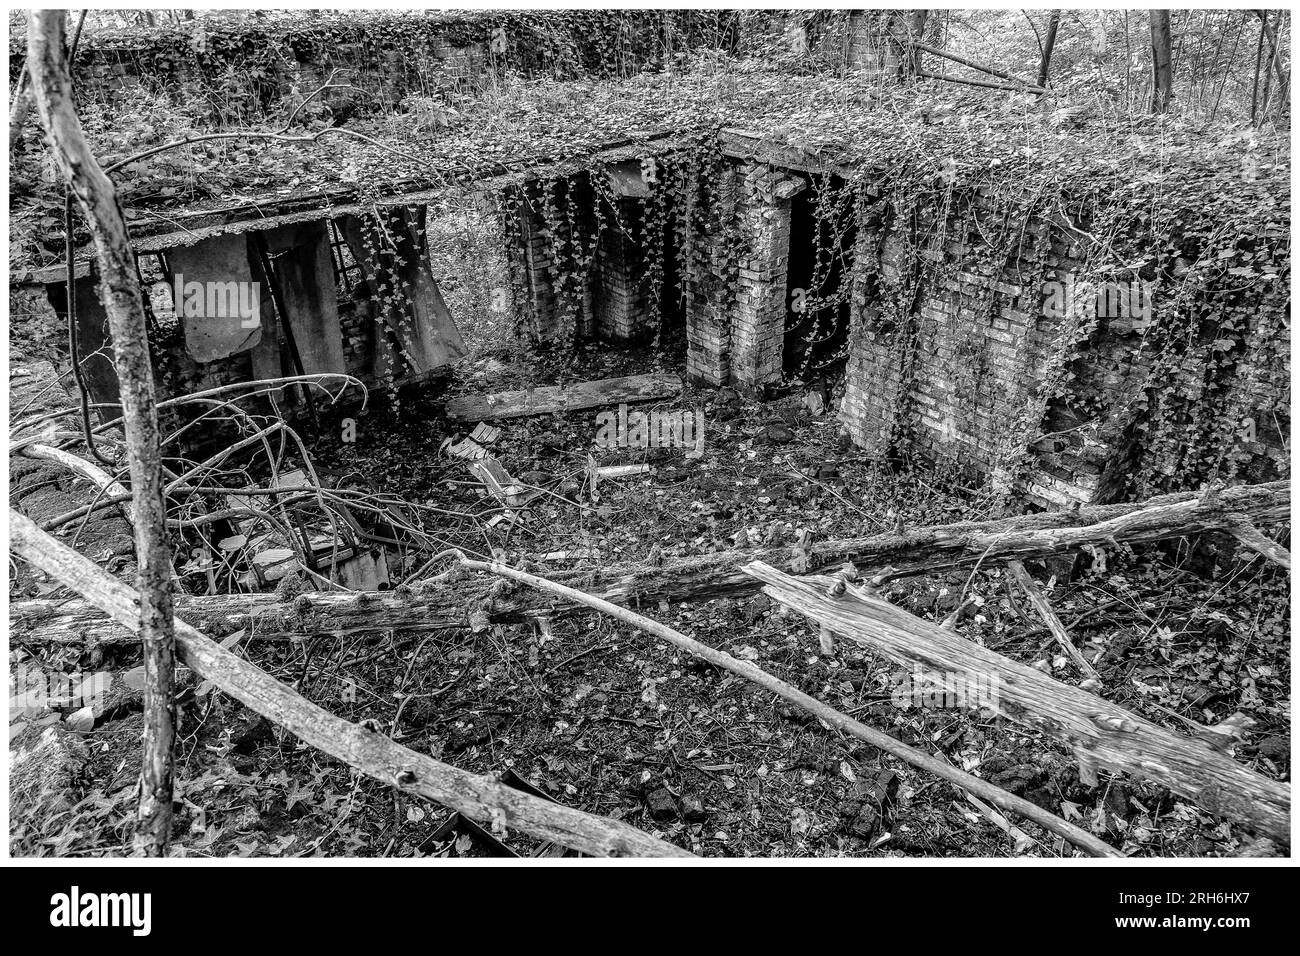 Friche industrielle dans les bois - Batiments a l'abandon emprisonnes par la nature, le lierre et les racines |  Industrial wasteland - industrial bui Stock Photo